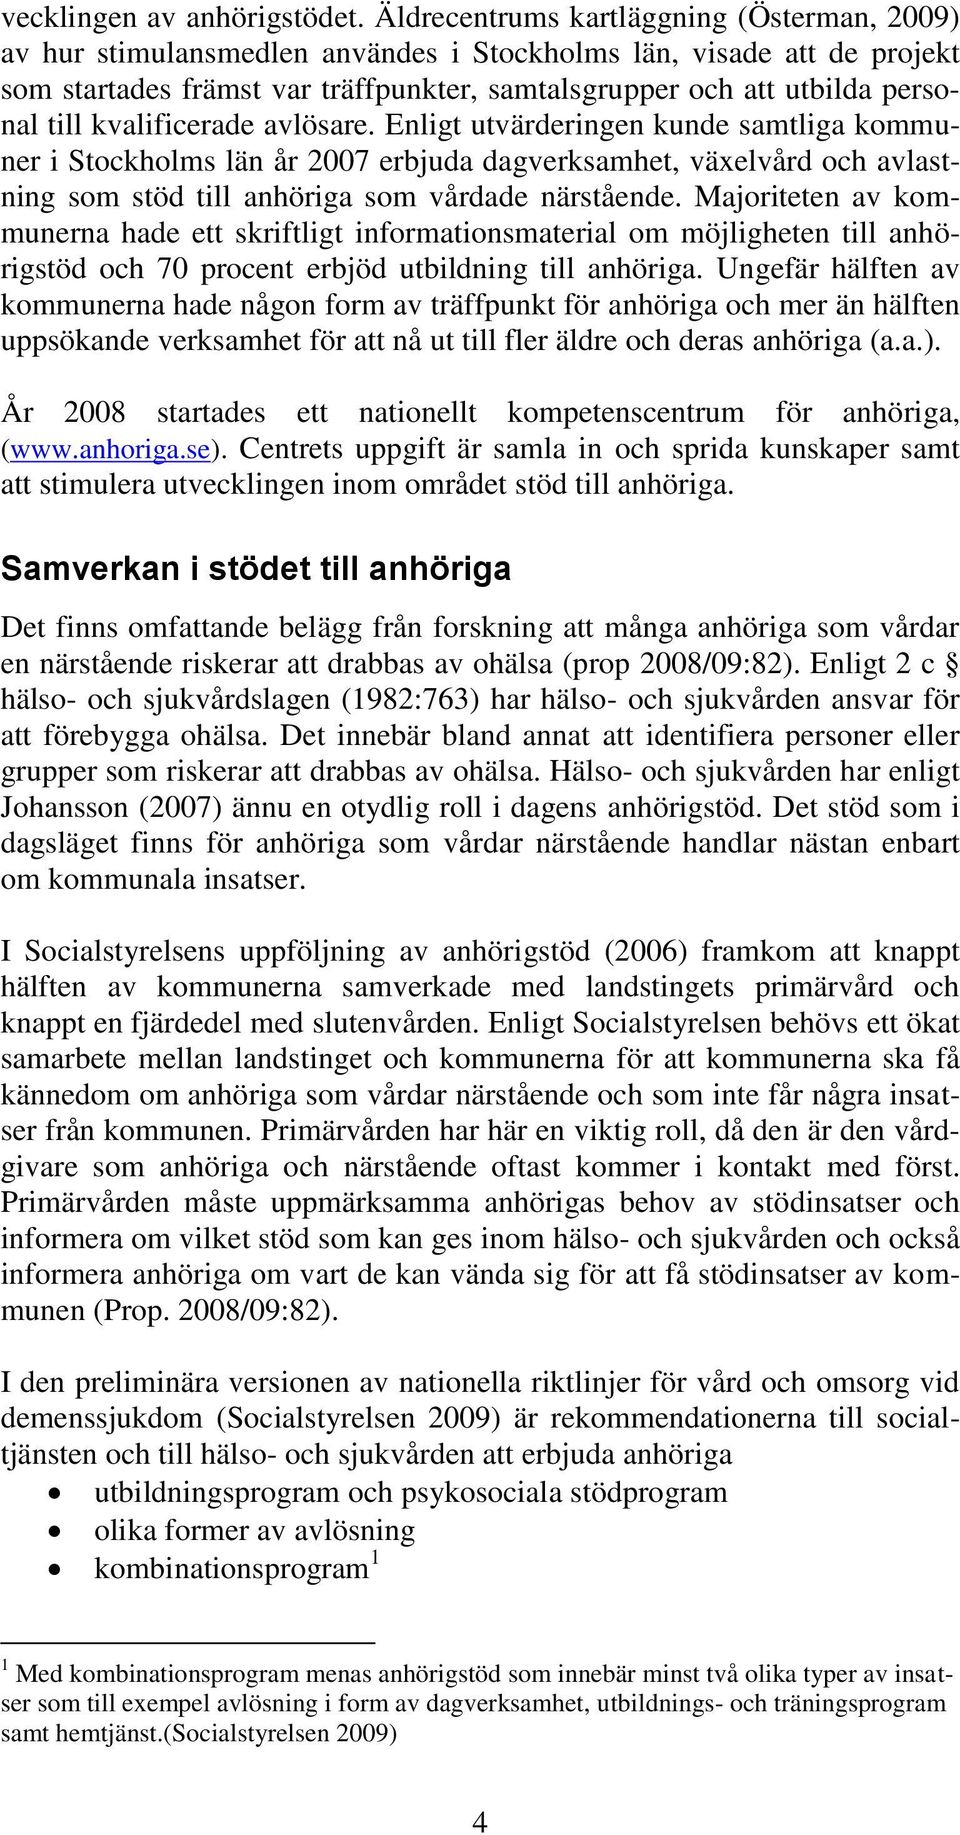 kvalificerade avlösare. Enligt utvärderingen kunde samtliga kommuner i Stockholms län år 2007 erbjuda dagverksamhet, växelvård och avlastning som stöd till anhöriga som vårdade närstående.